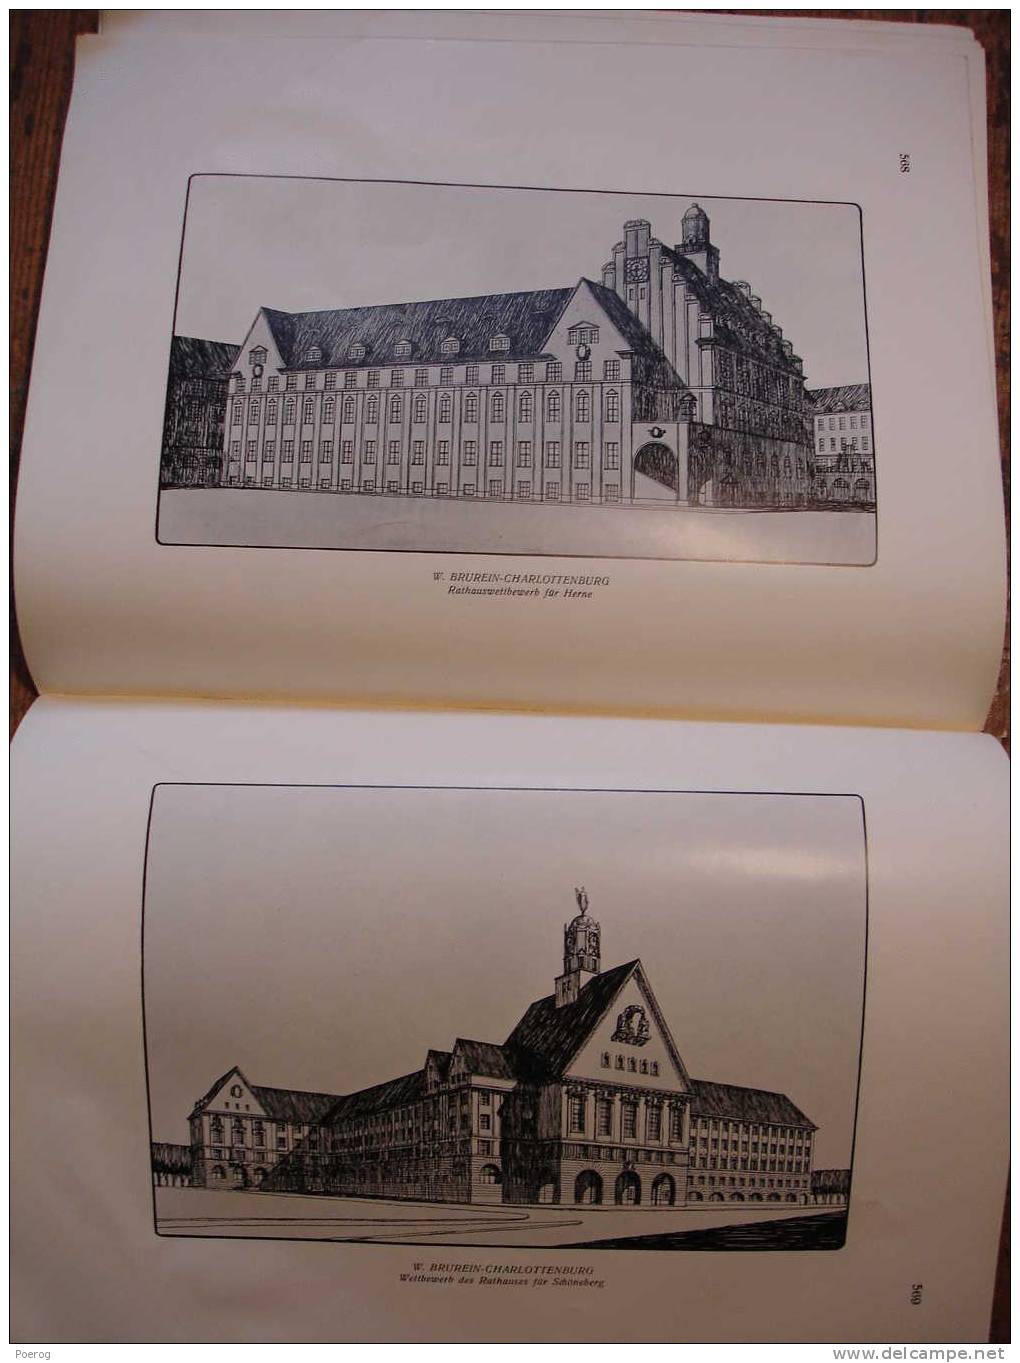 MODERNE BAUFORMEN - REVUE ALLEMANDE D' ARCHITECTURE - 1910 - très illustrée - belle facture très nombreuses planches